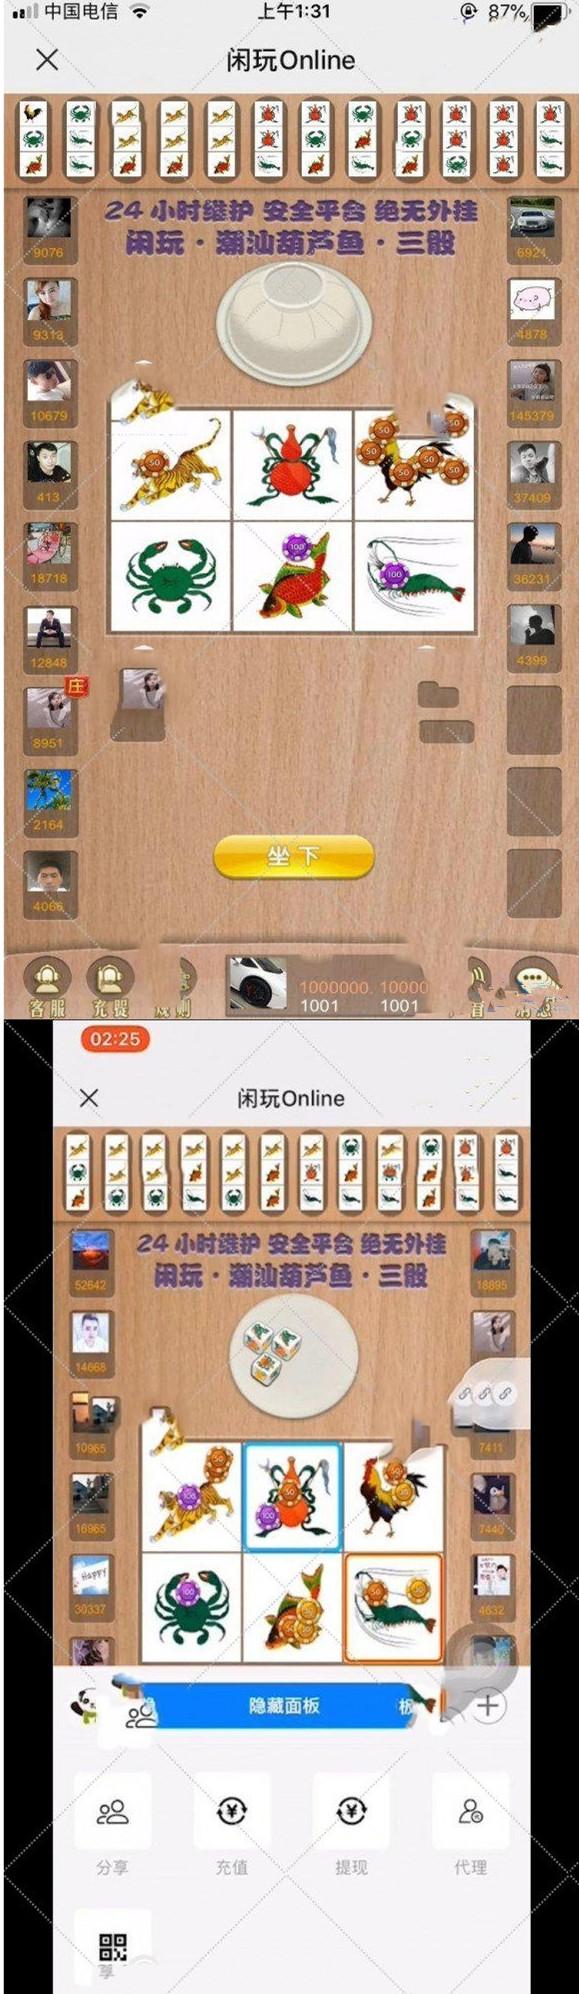 online葫芦鱼虾蟹H5闲玩游戏源码-含代理充值和控制系统插图1